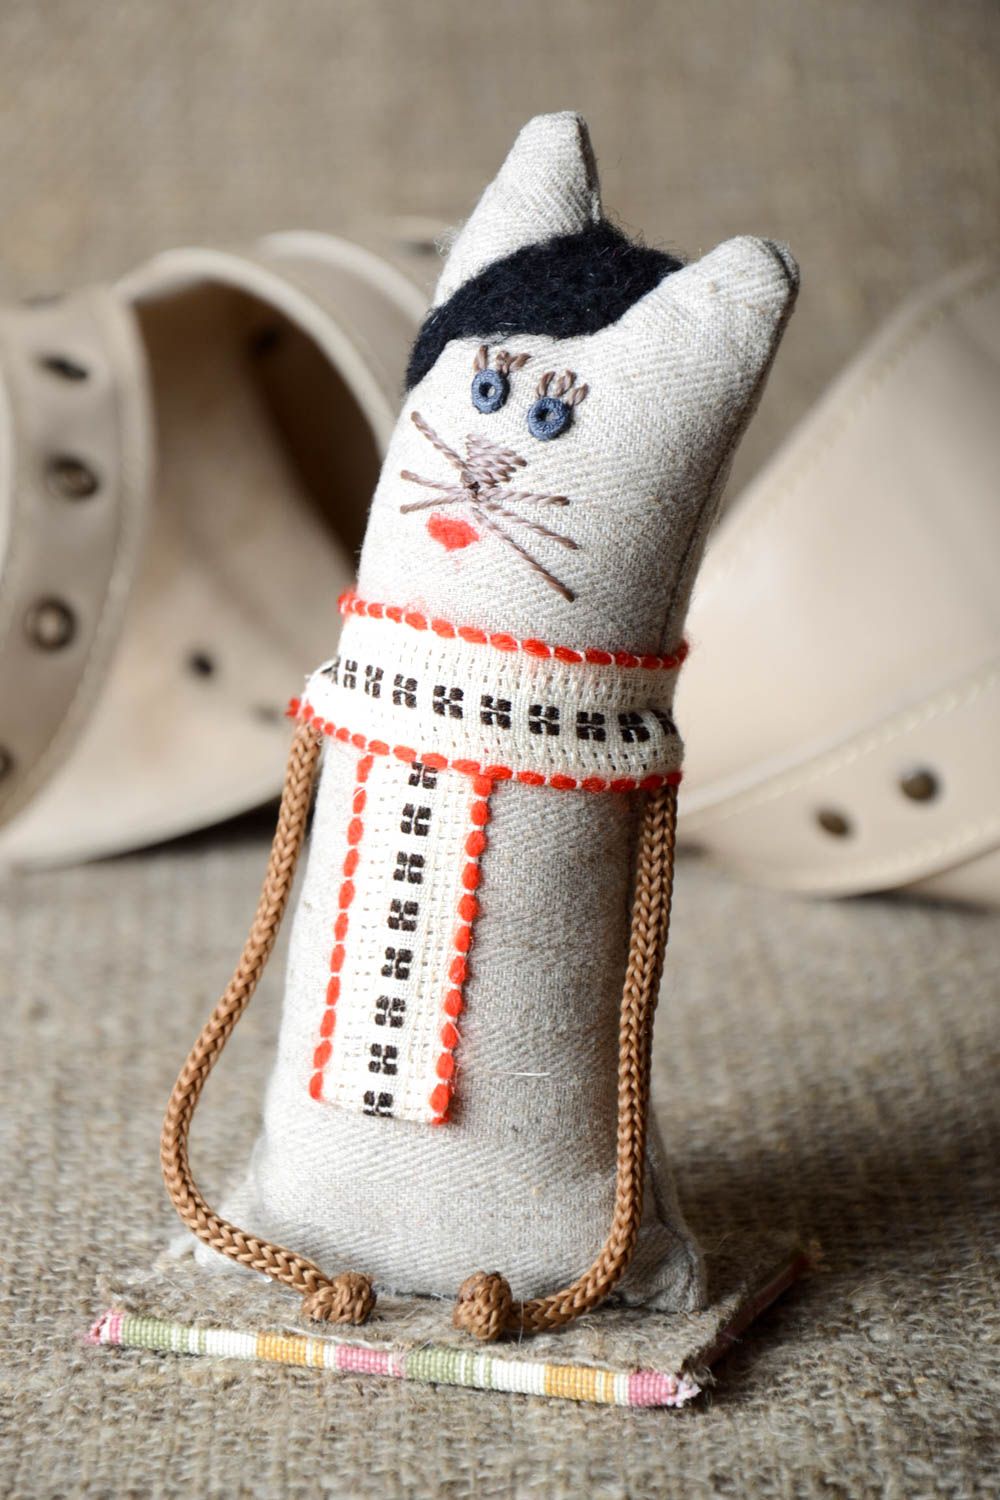 Котик фигурка ручной работы текстильный декор для дома необычный подарок ребенку фото 1